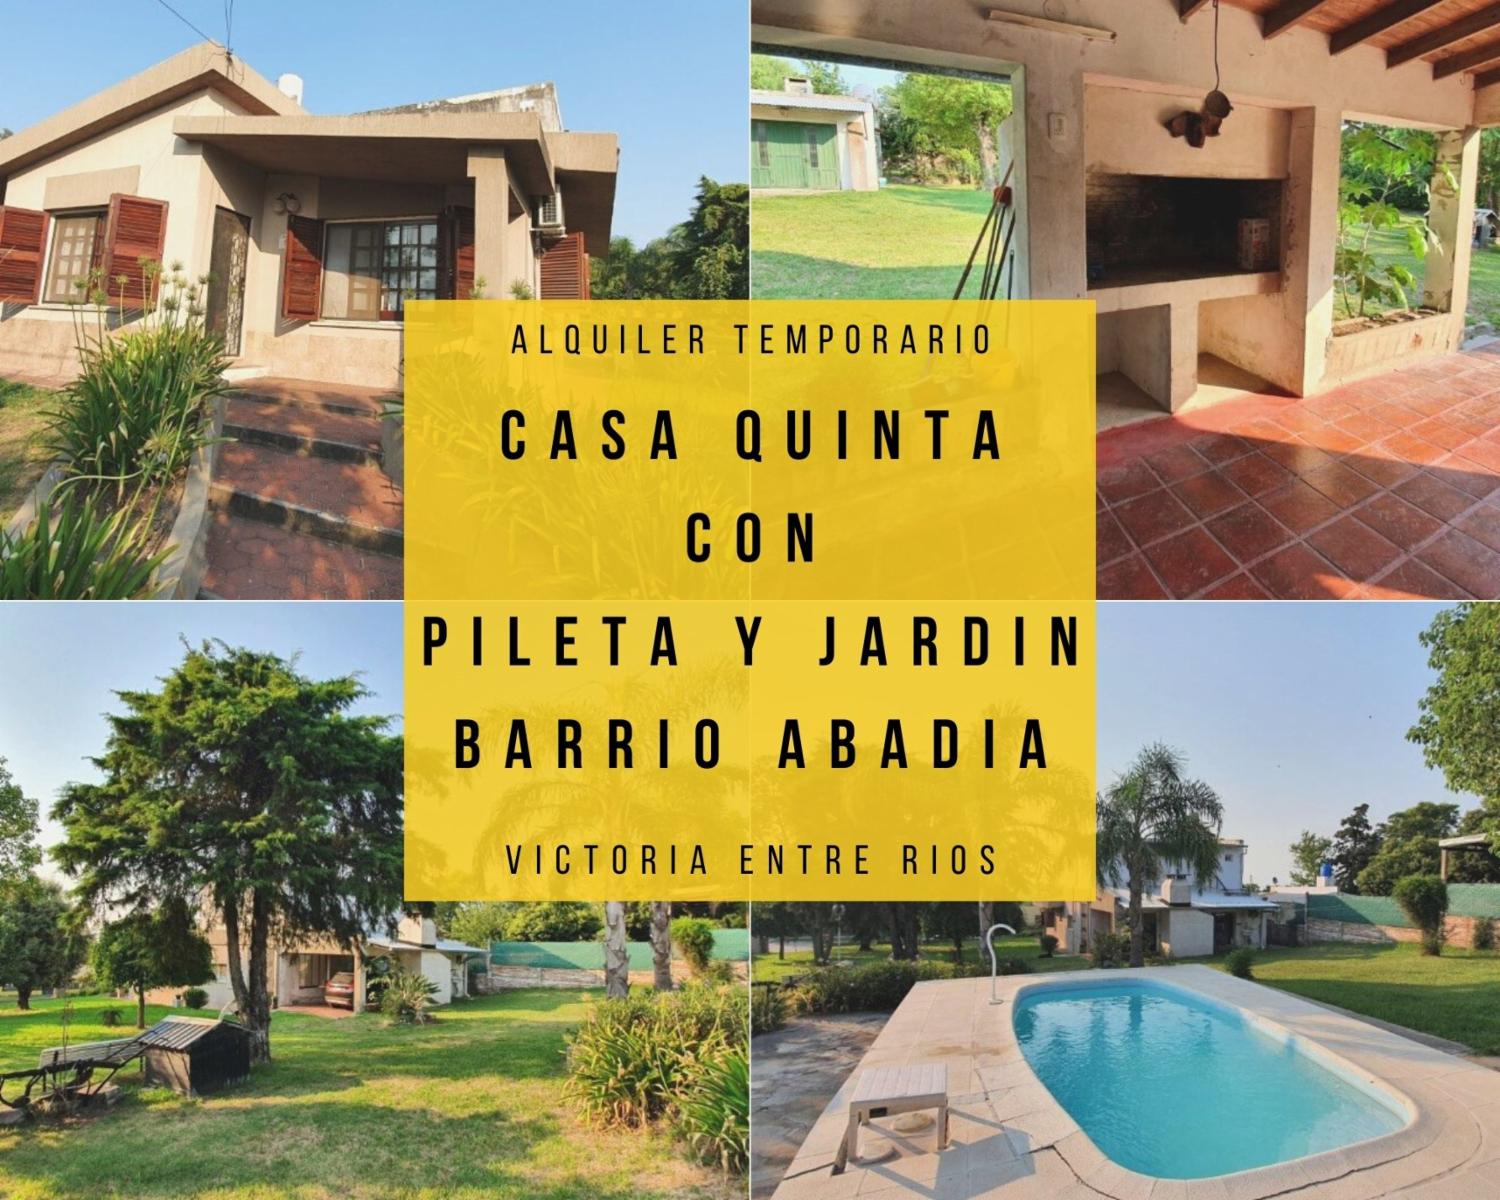 Alquiler Temporario � Hermosa Casa Quinta con Pileta, Jard�n y Parrillero - Barrio Abad�a - Victoria